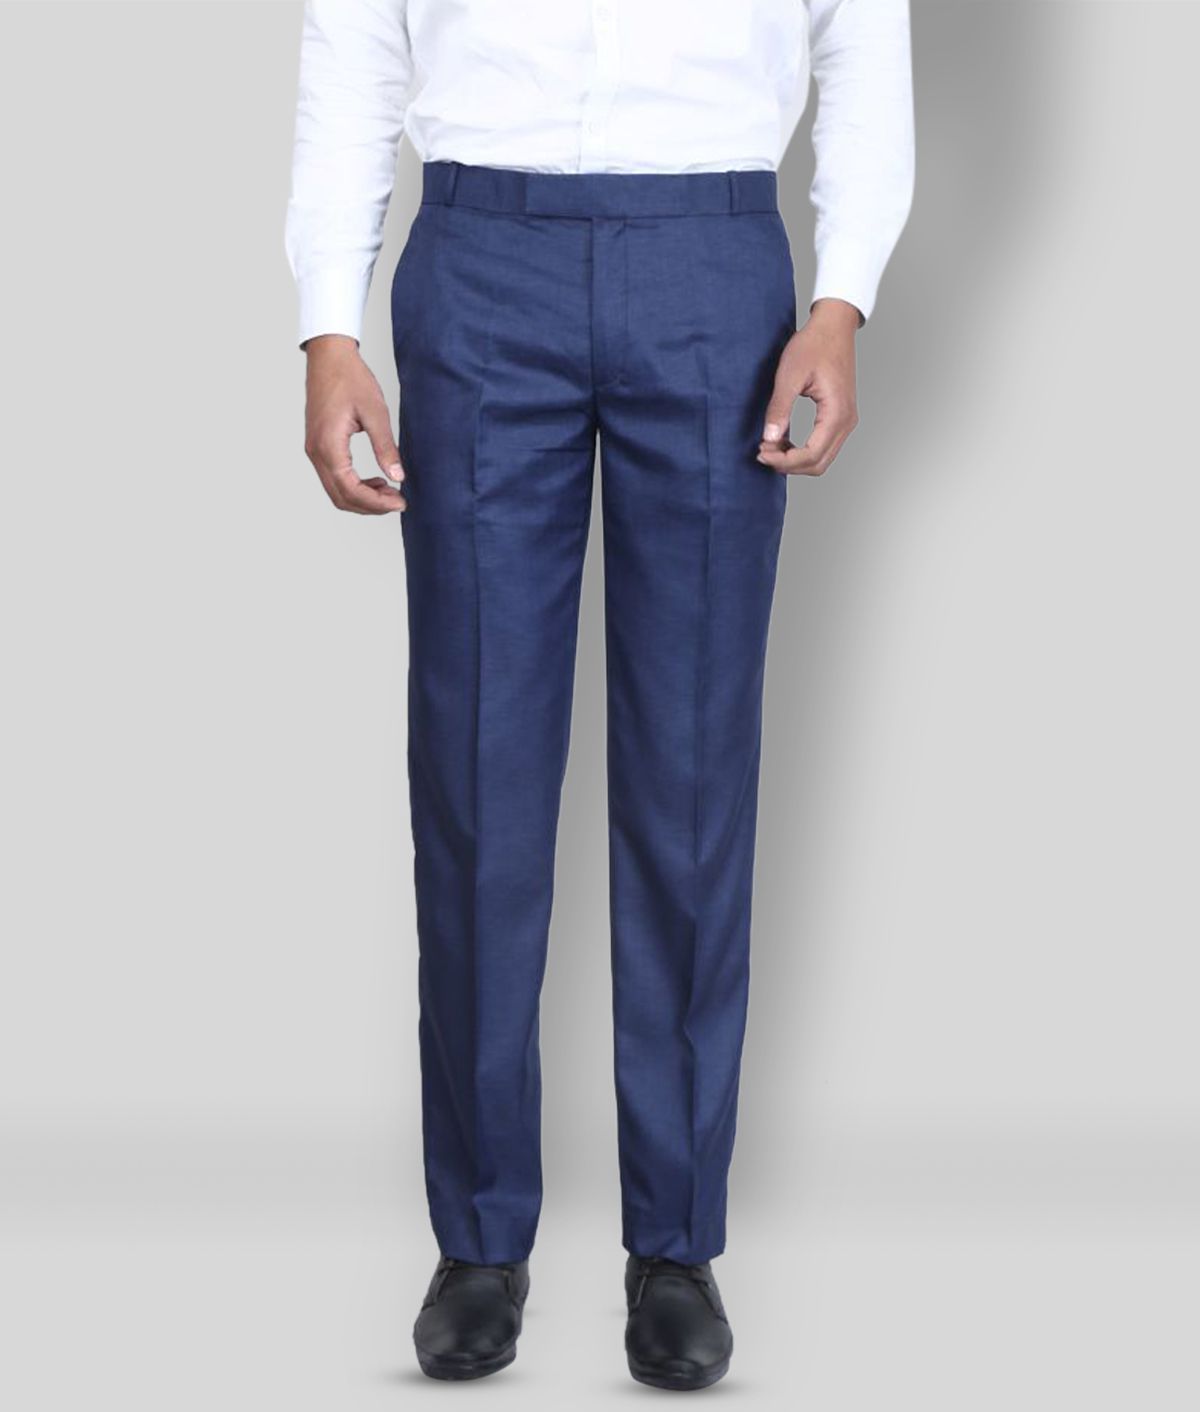 K.S.BRAND - Blue Polycotton Regular - Fit Men's Formal Pants ( Pack of 1 )